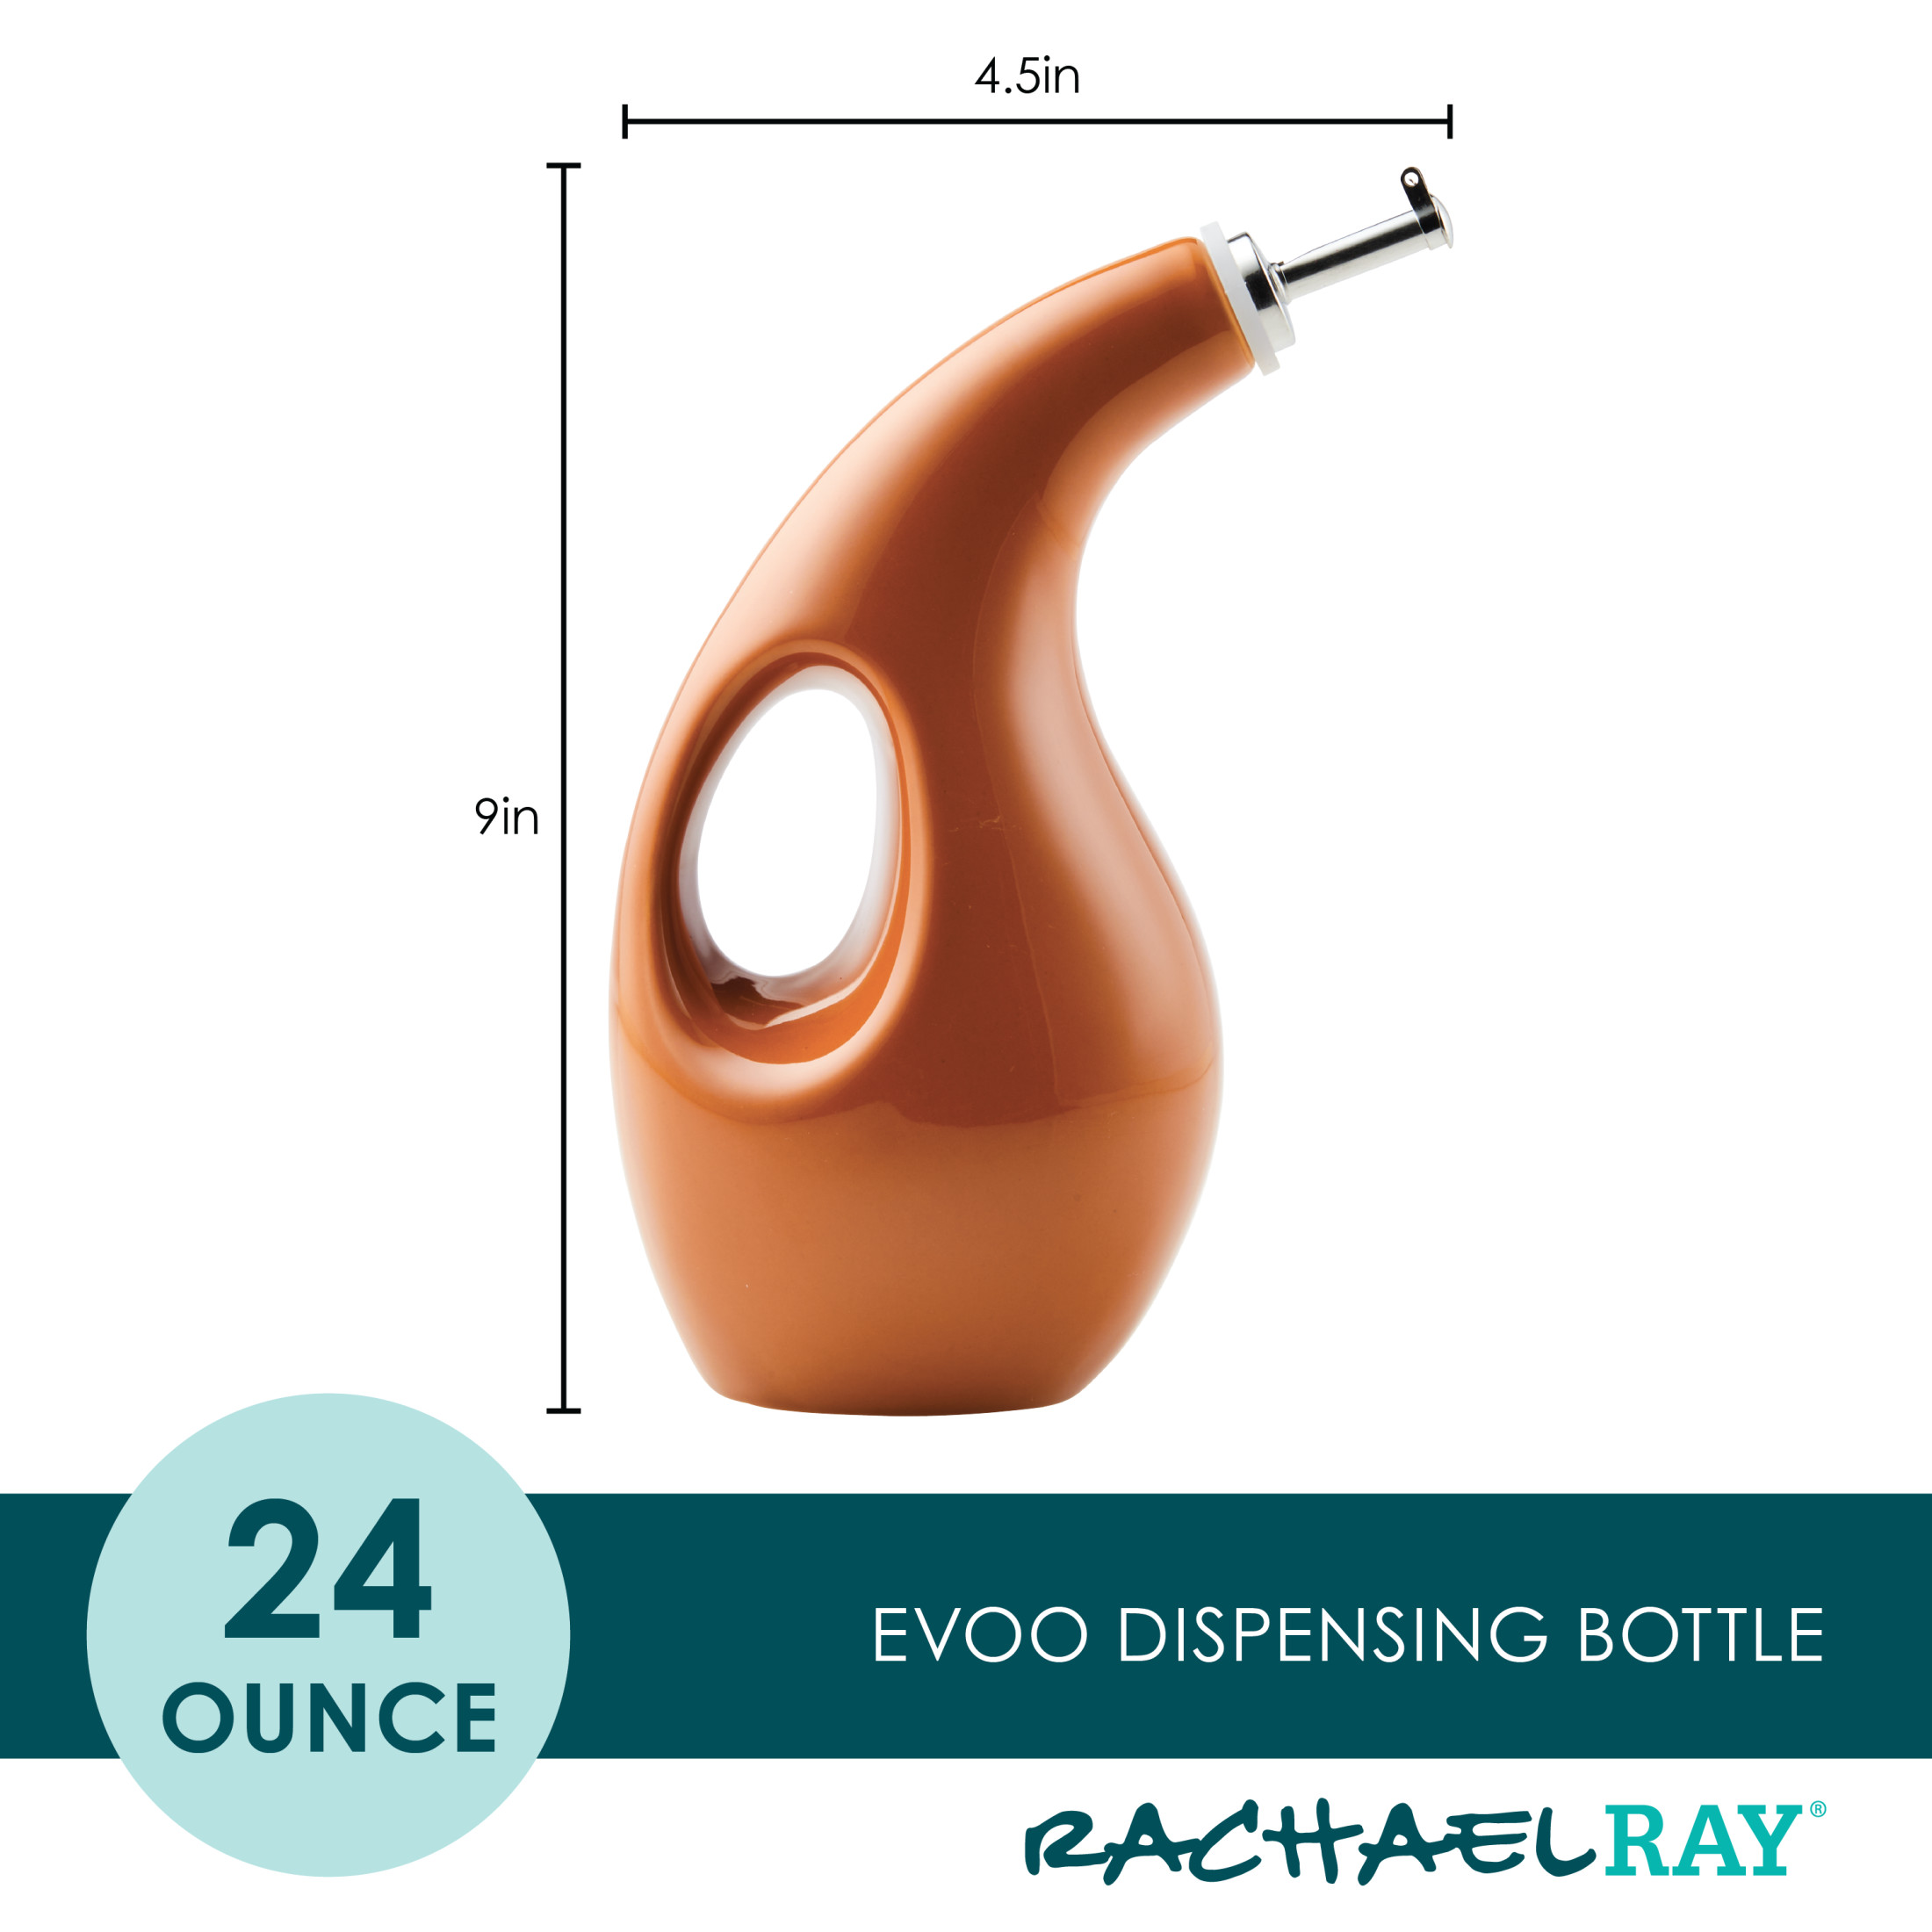 Rachael Ray Ceramic EVOO Oil and Vinegar Dispensing Bottle, 24-Ounce, Pumpkin Orange - image 2 of 11